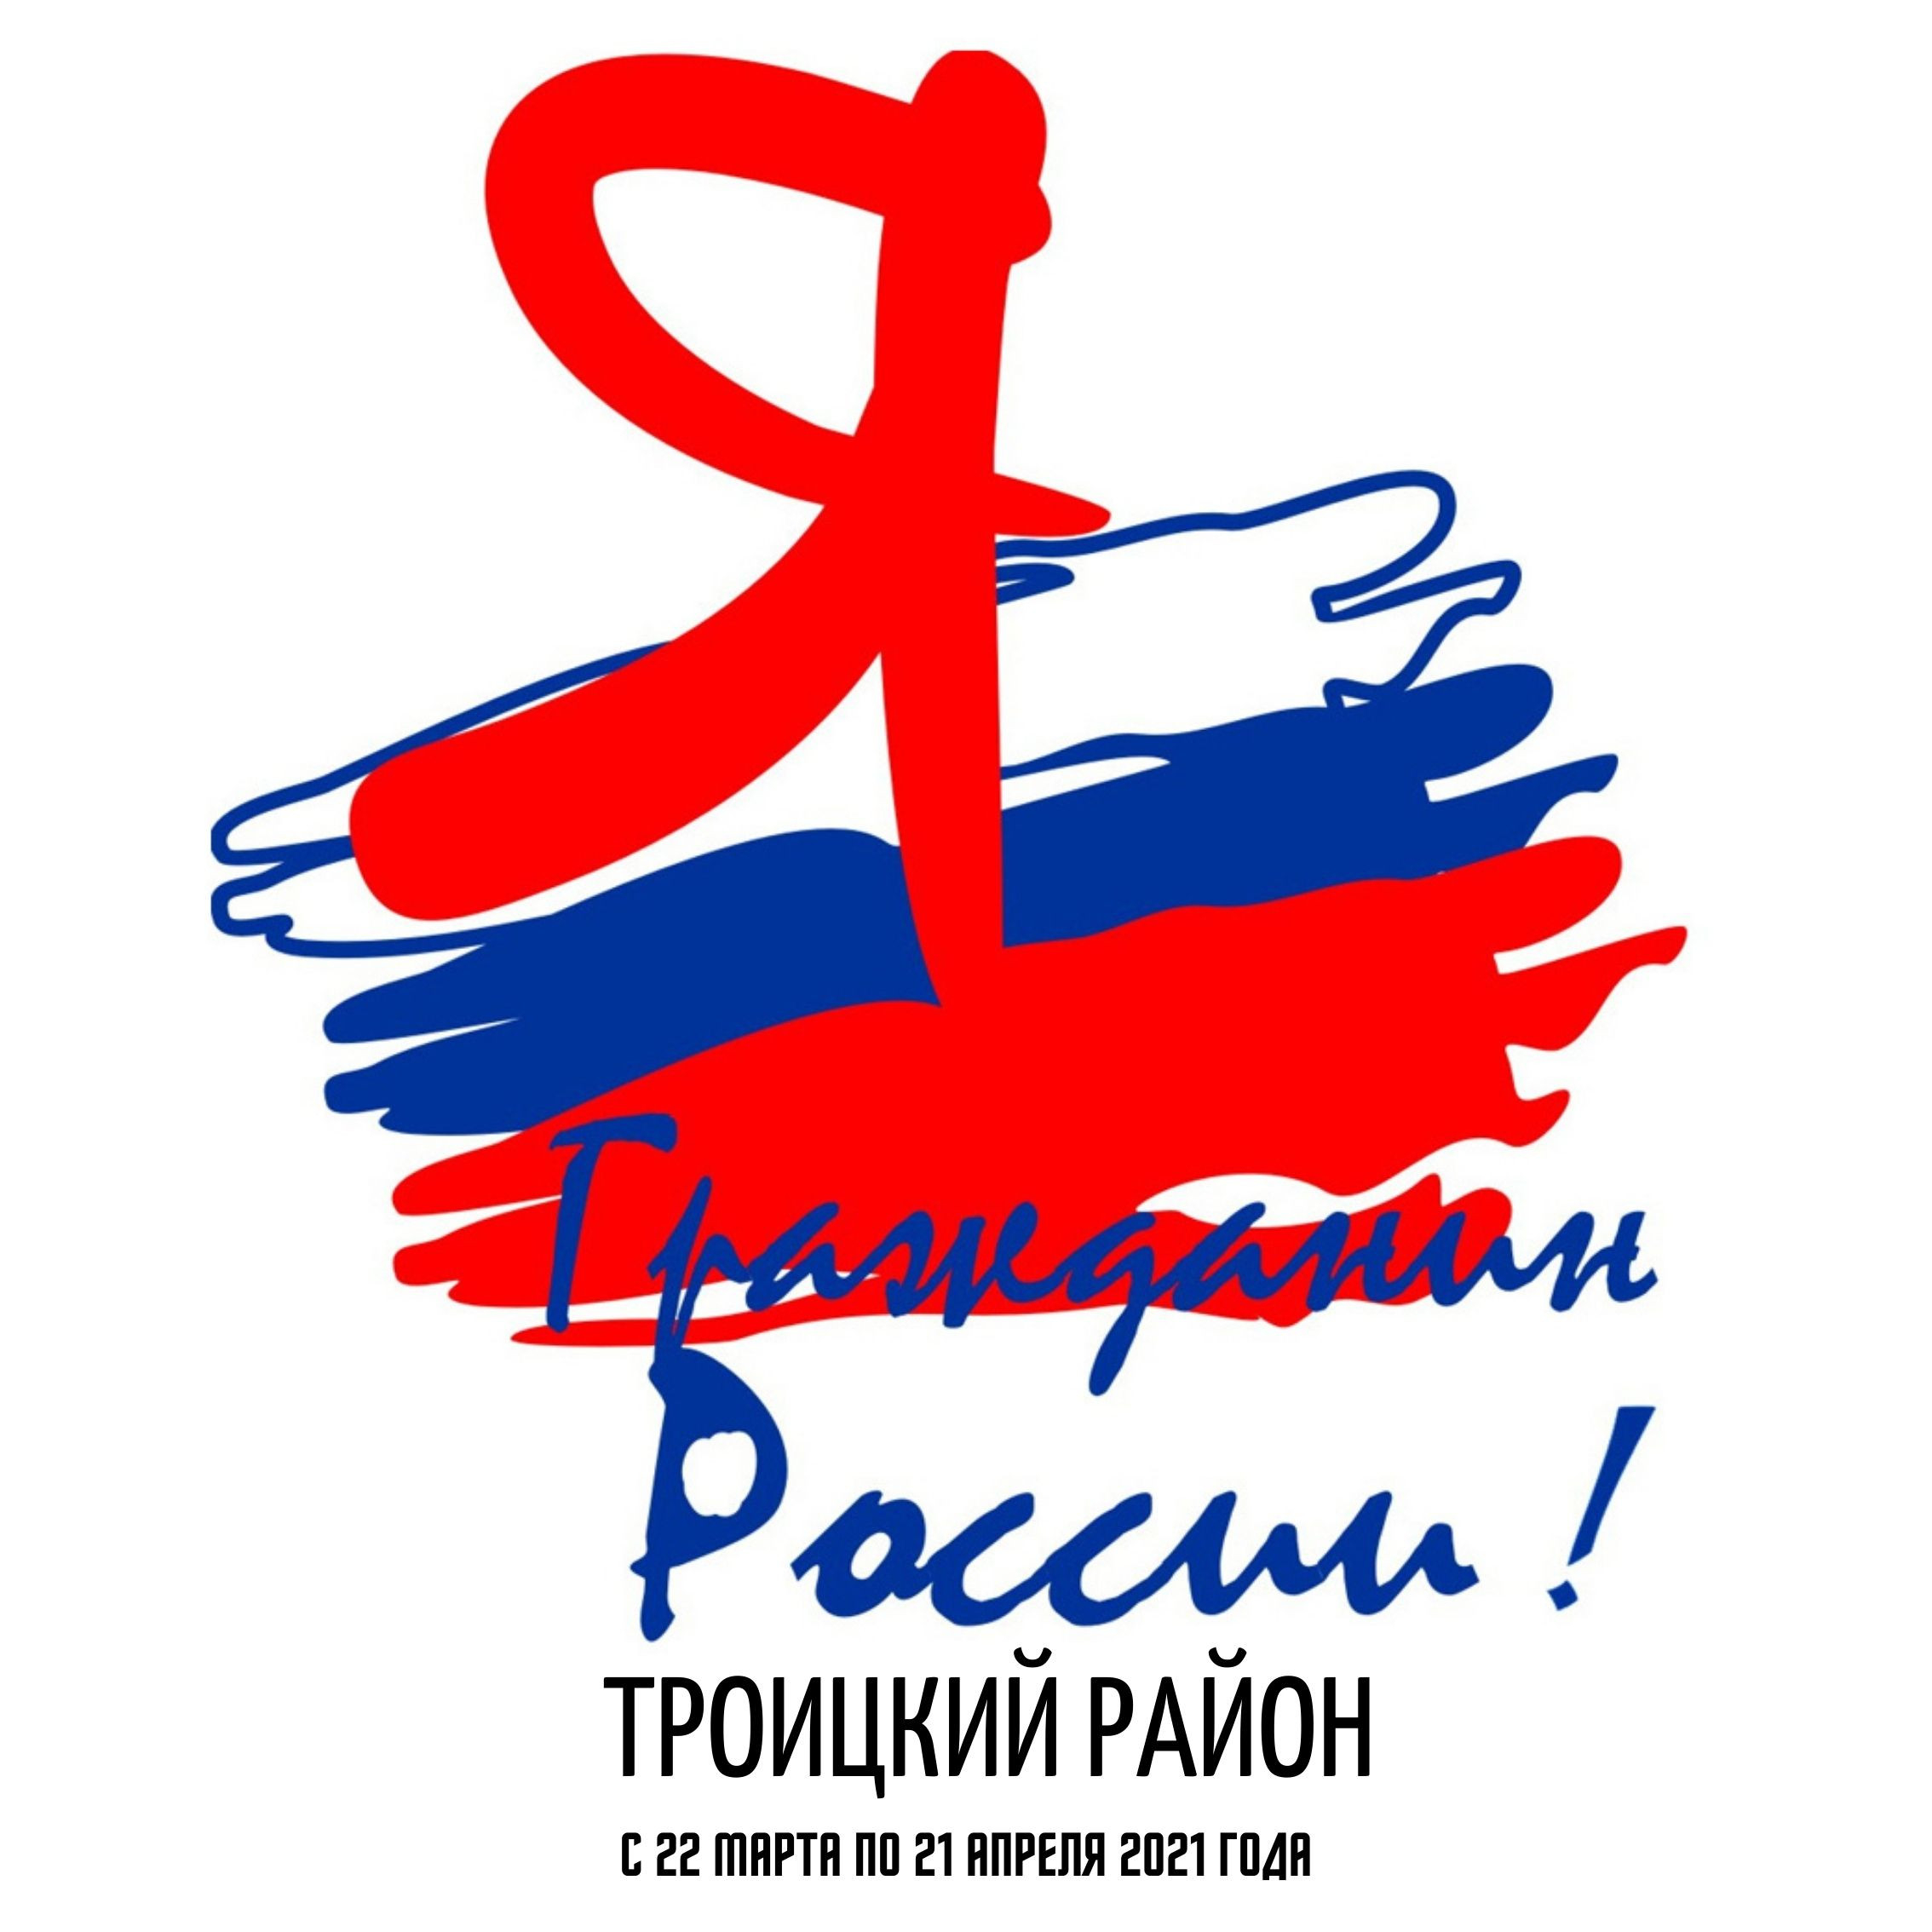 Логотип я гражданин России